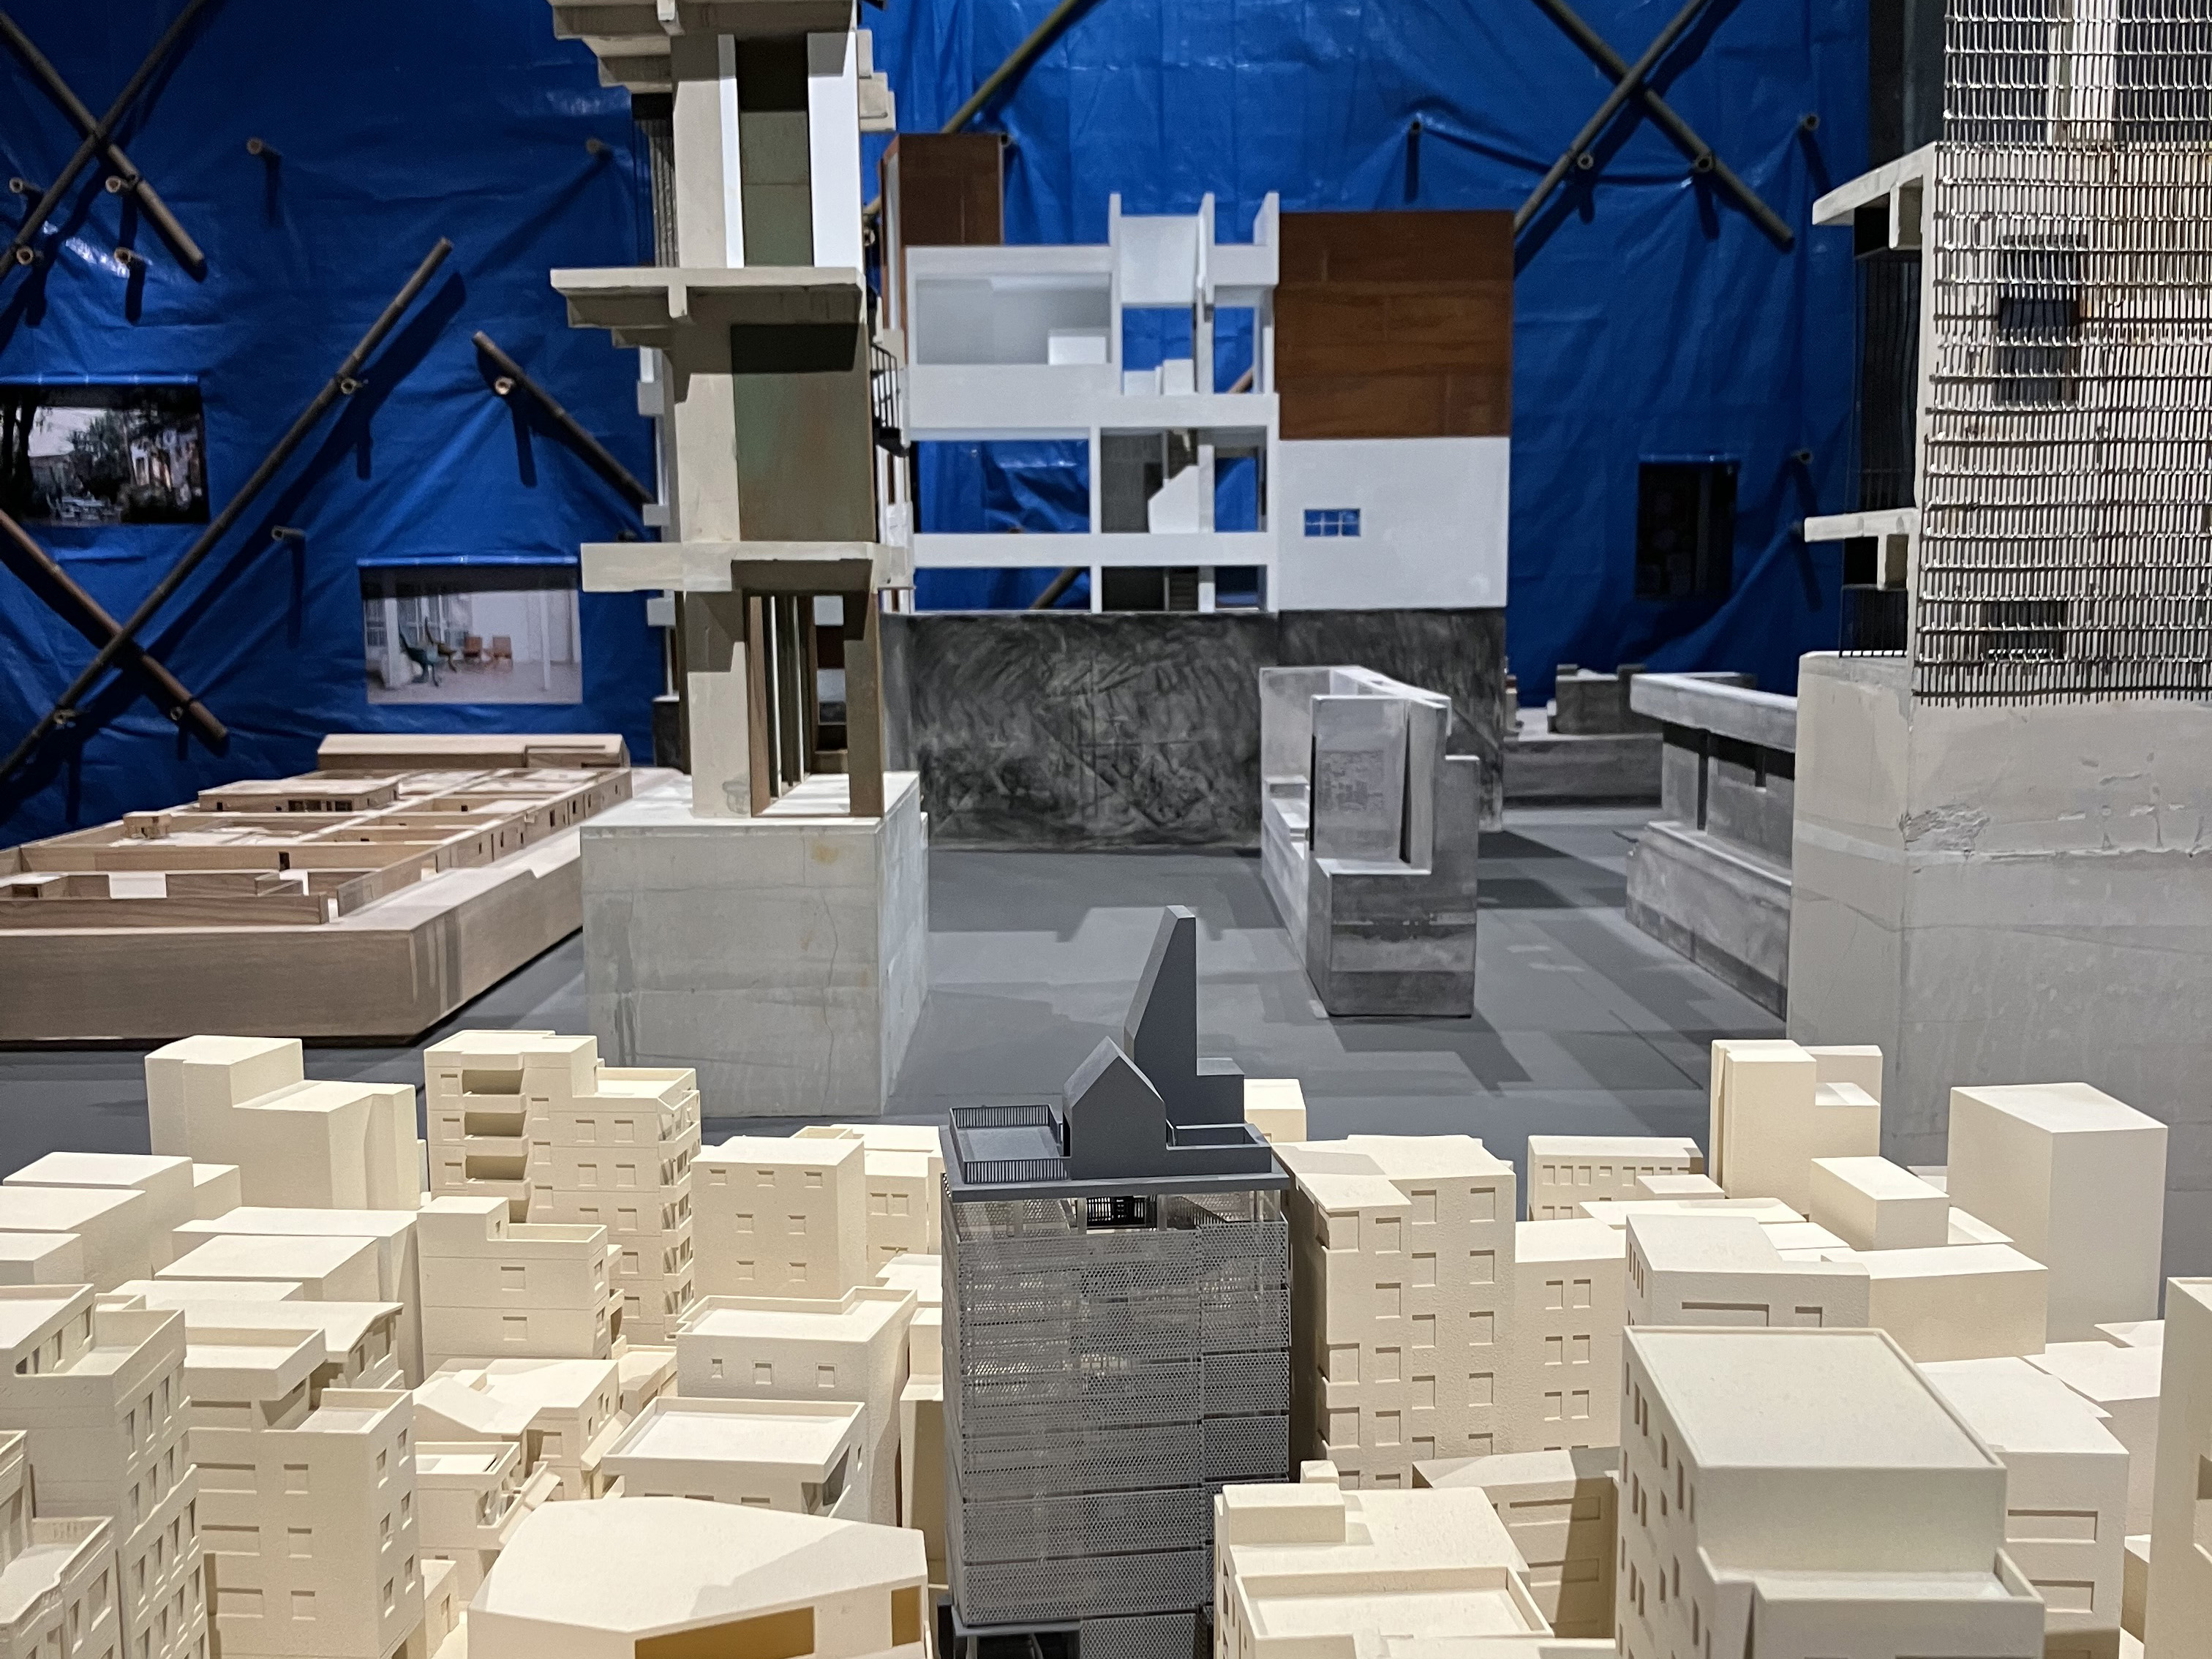 La 18 Bienal de Arquitectura de Venecia: “El laboratorio del futuro”